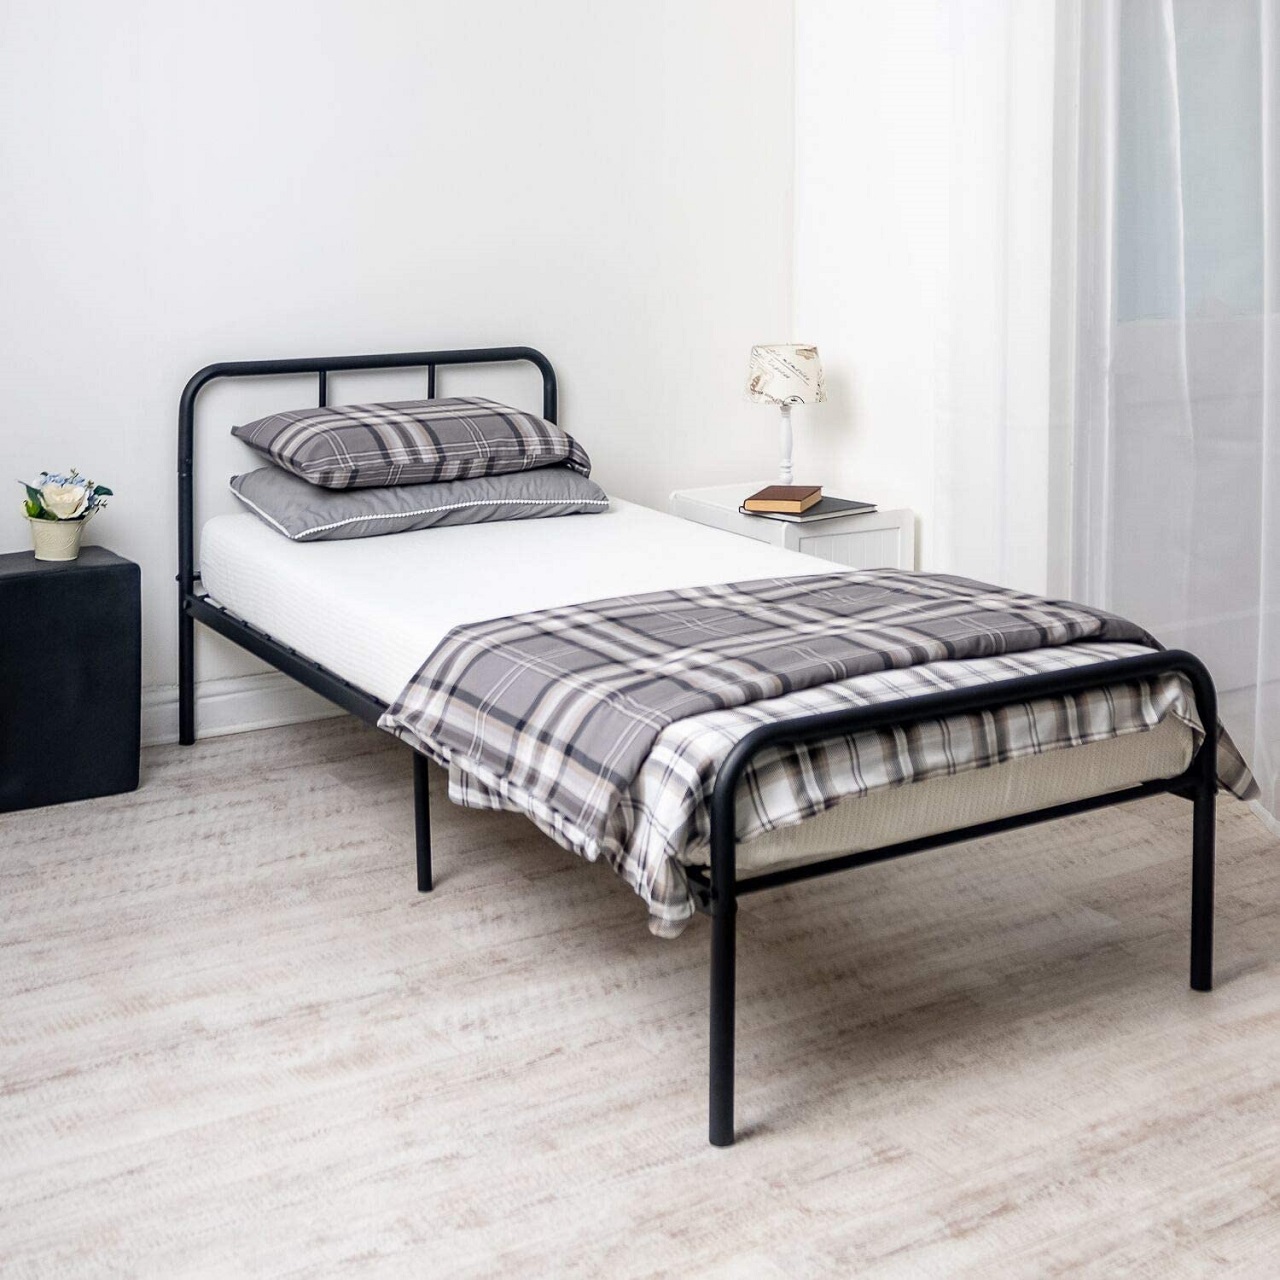 Black Single Metal Curved Bed Frame | BedSale.com